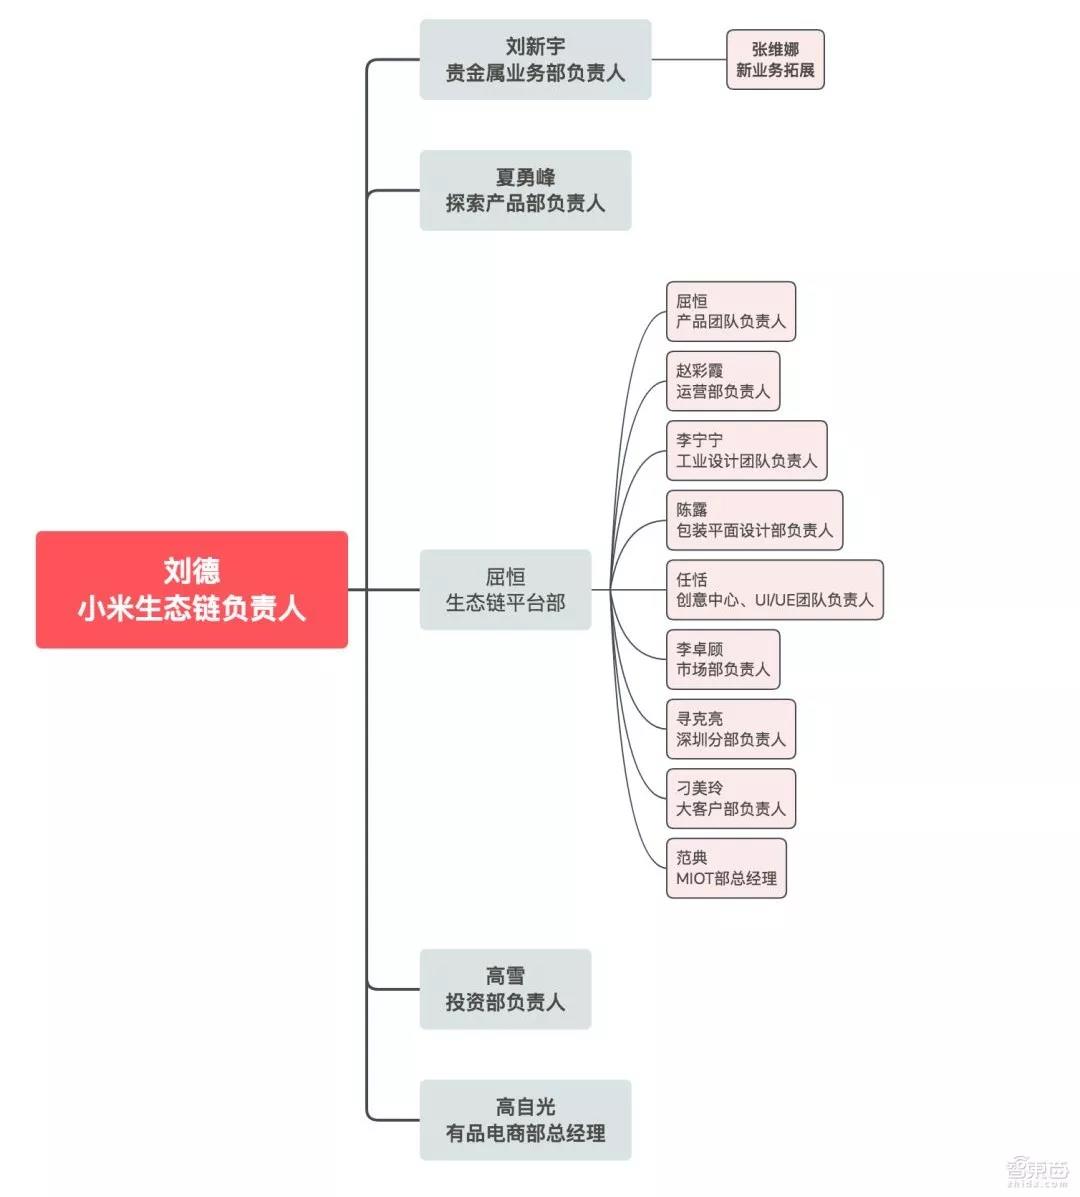 小米供应链结构图2021图片